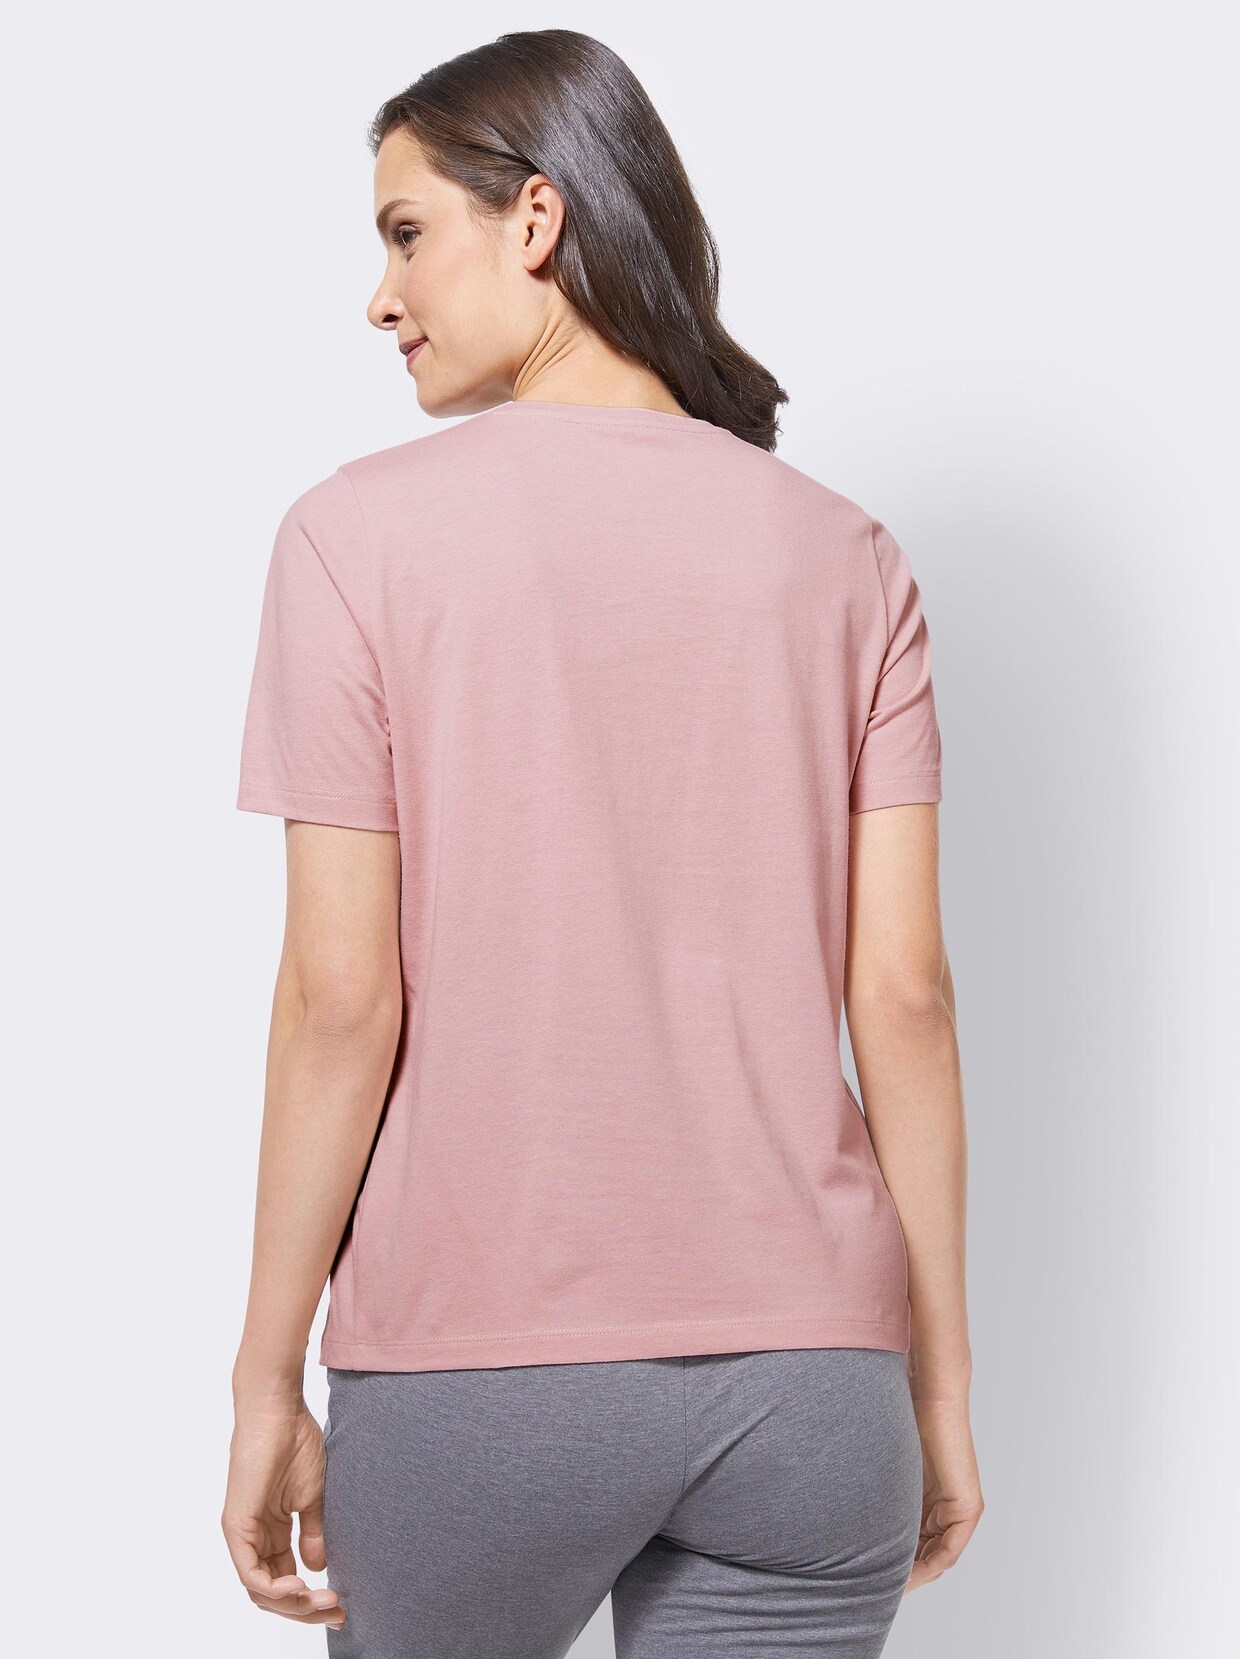 feel good Shirts - rosenquarz + rosenquarz-bedruckt